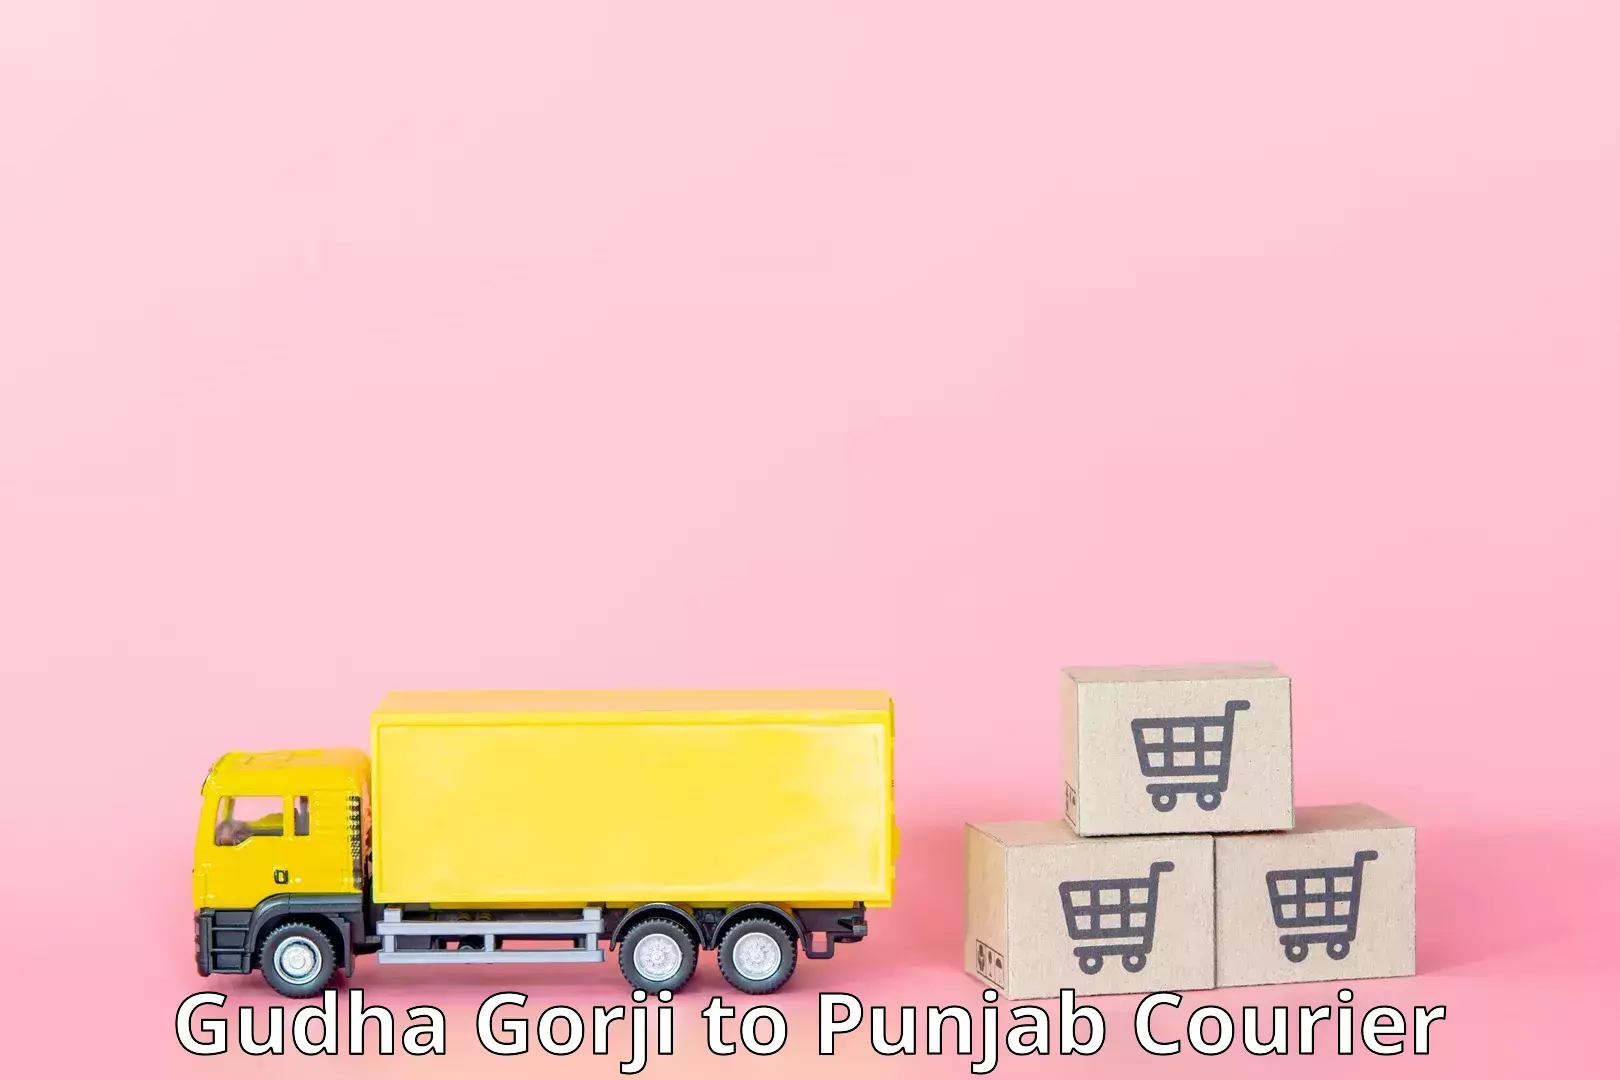 Efficient freight service Gudha Gorji to Sunam